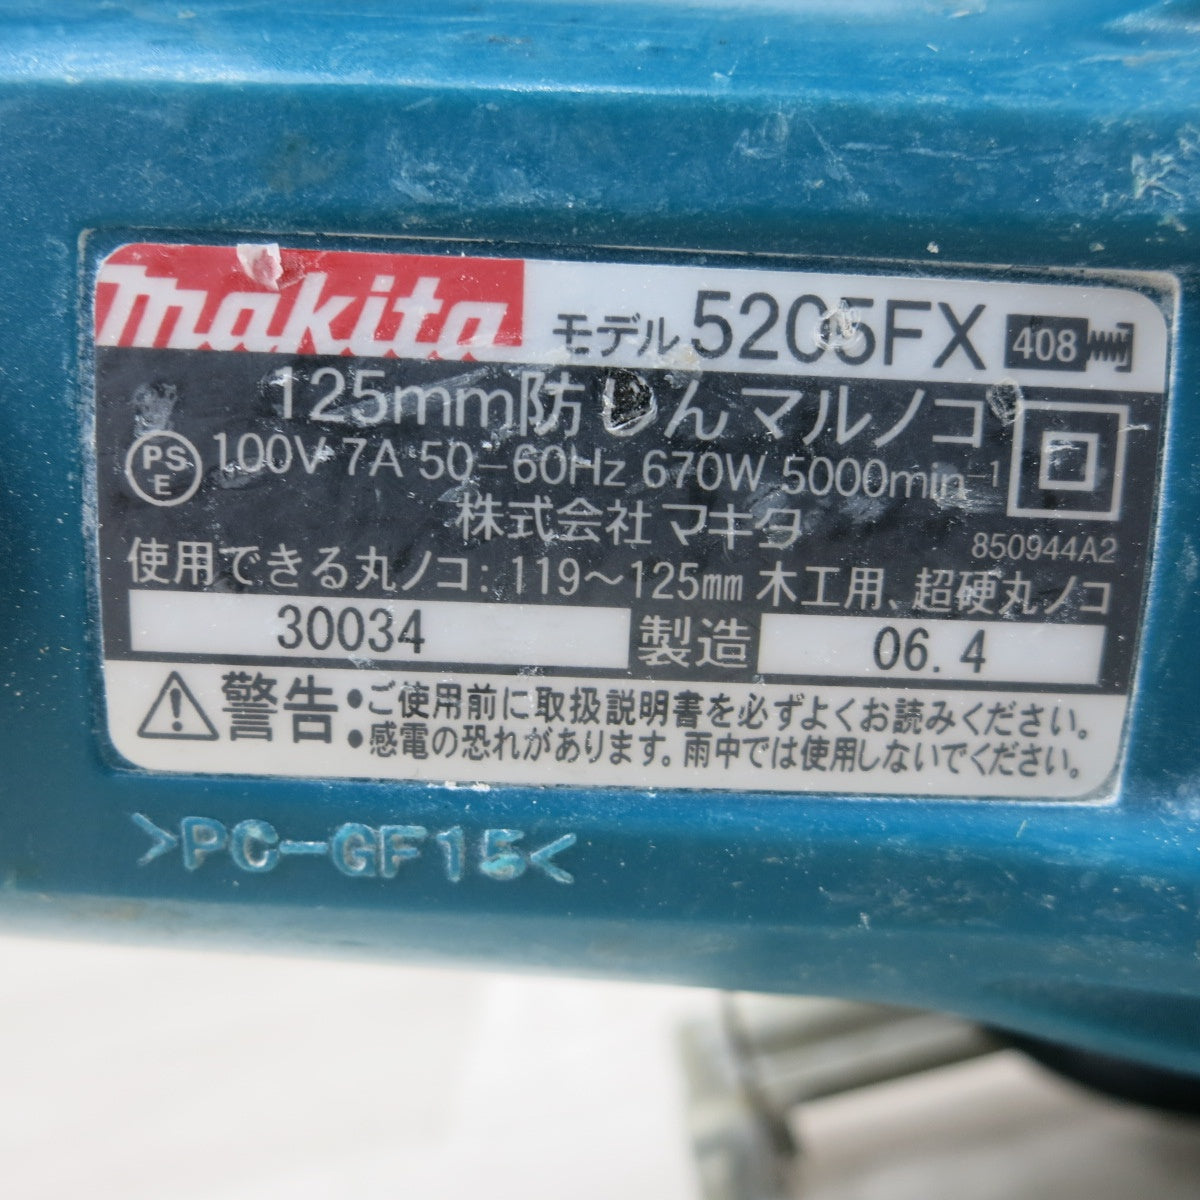 [送料無料] ◆makita マキタ 125mm 防じんマルノコ 5205FX 切断機 丸のこ 木工用 電動工具 100V◆